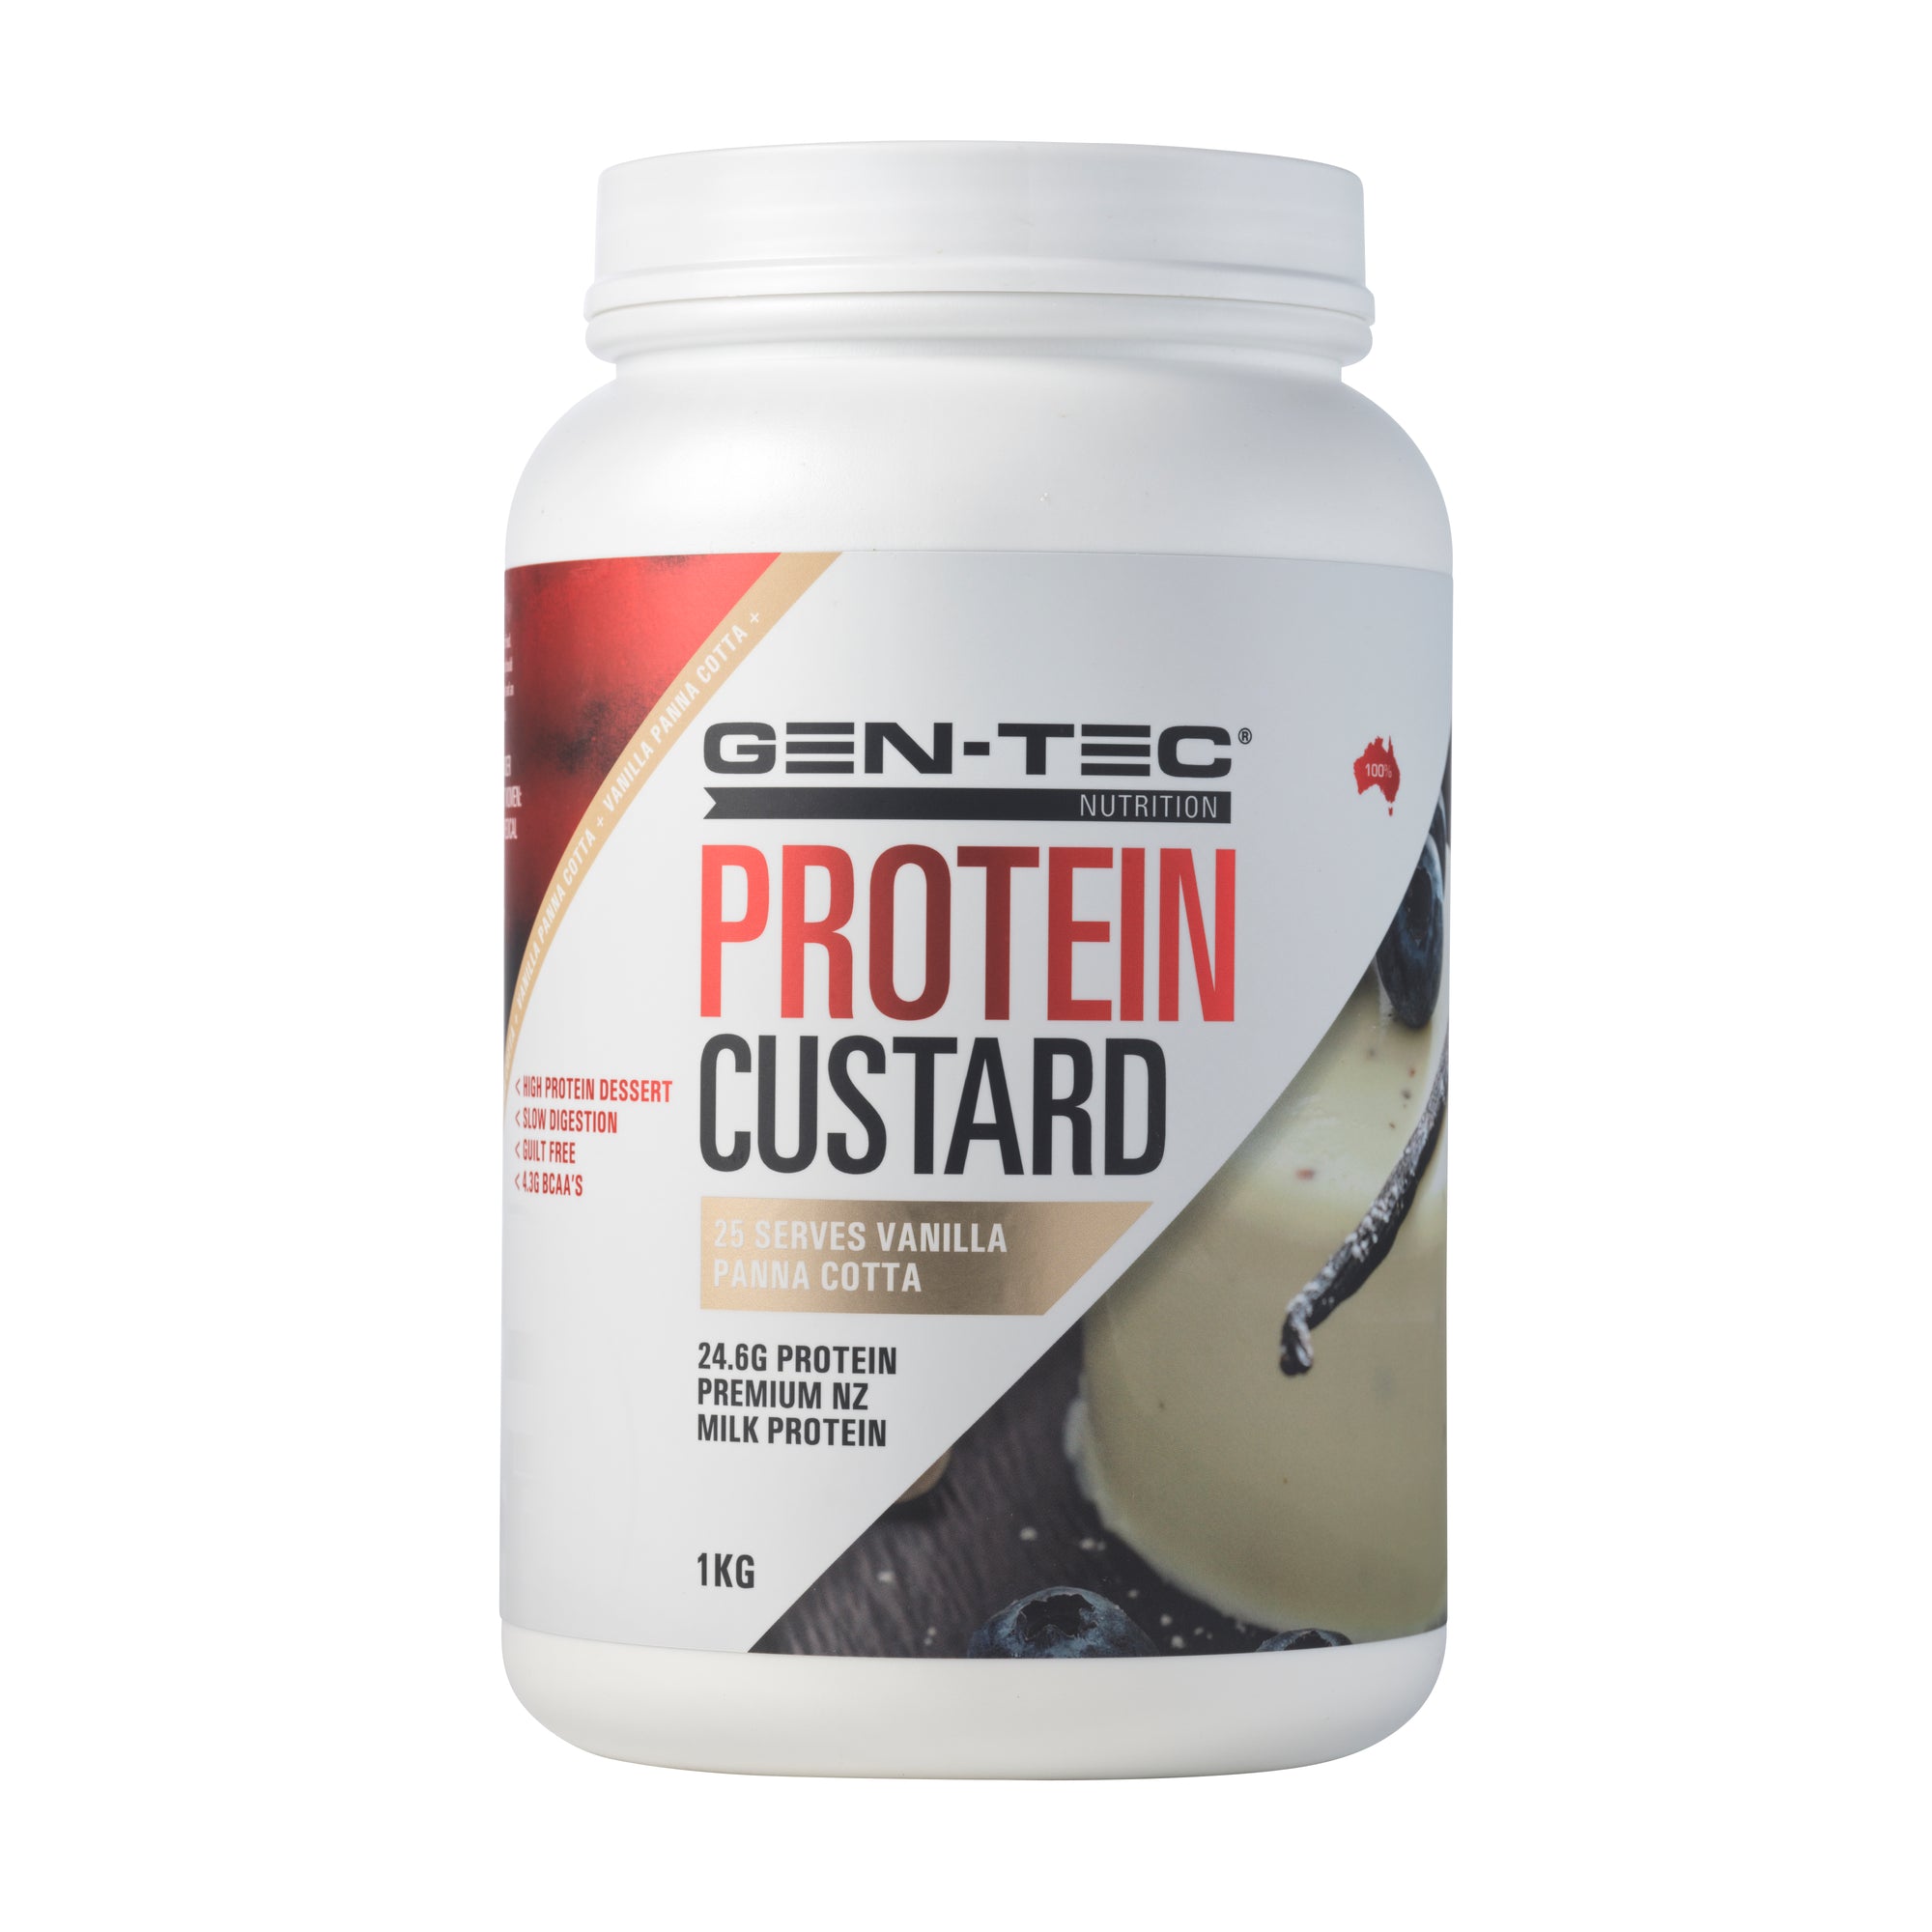 Protein Custard